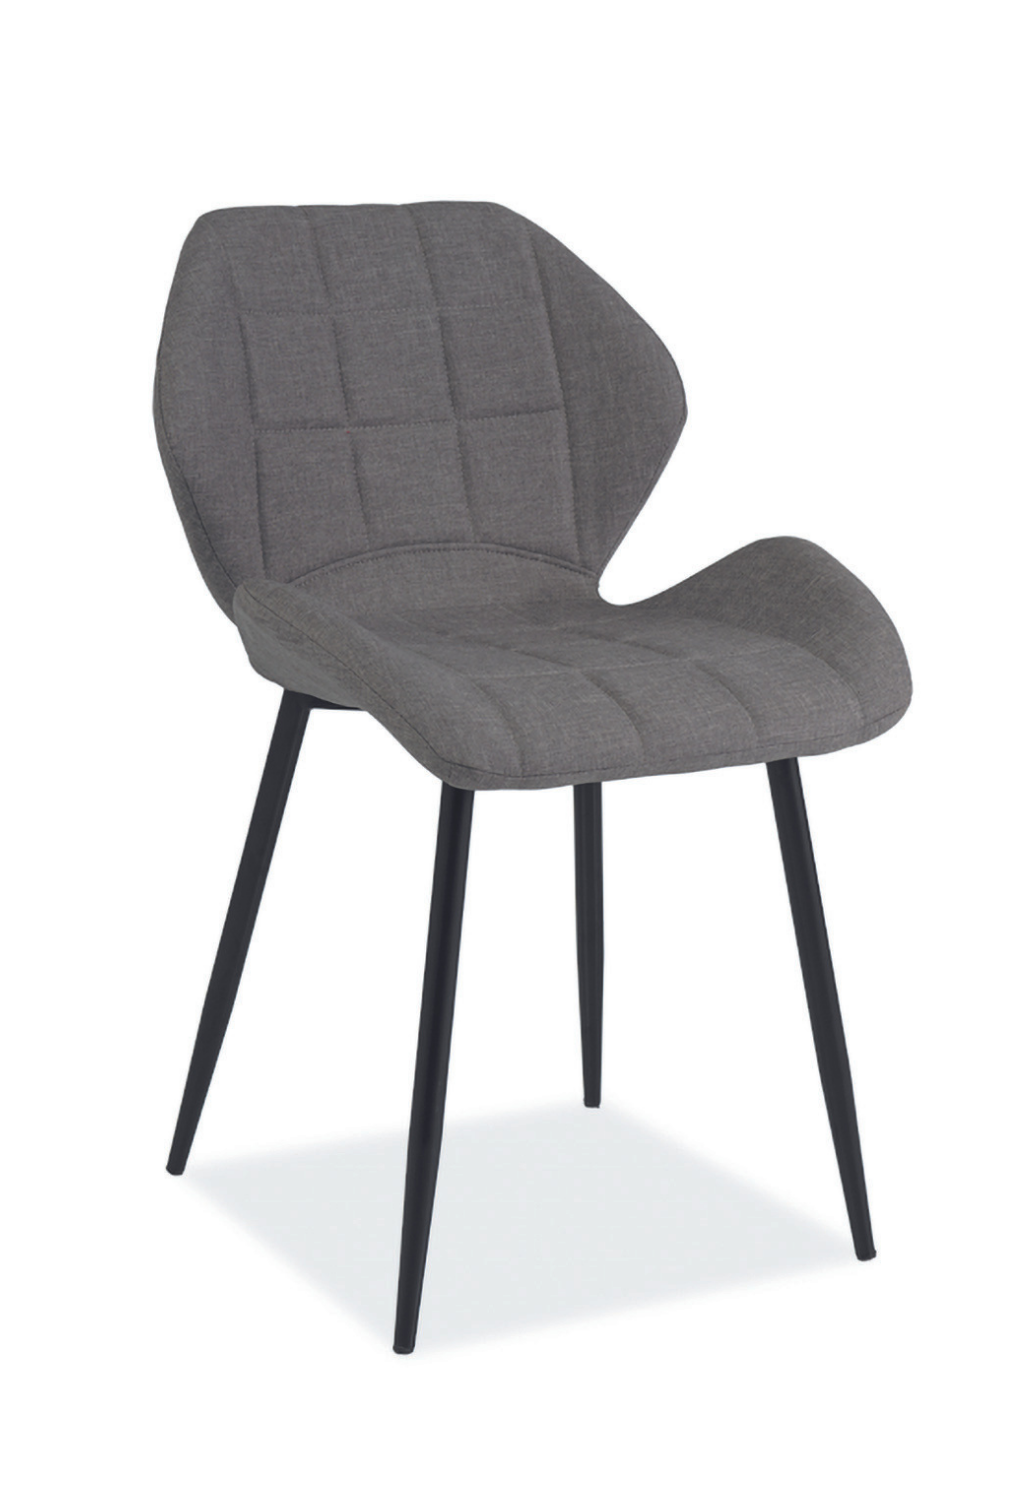 Malin szék (szürke) - Marco Mobili Bútoráruház - Szék